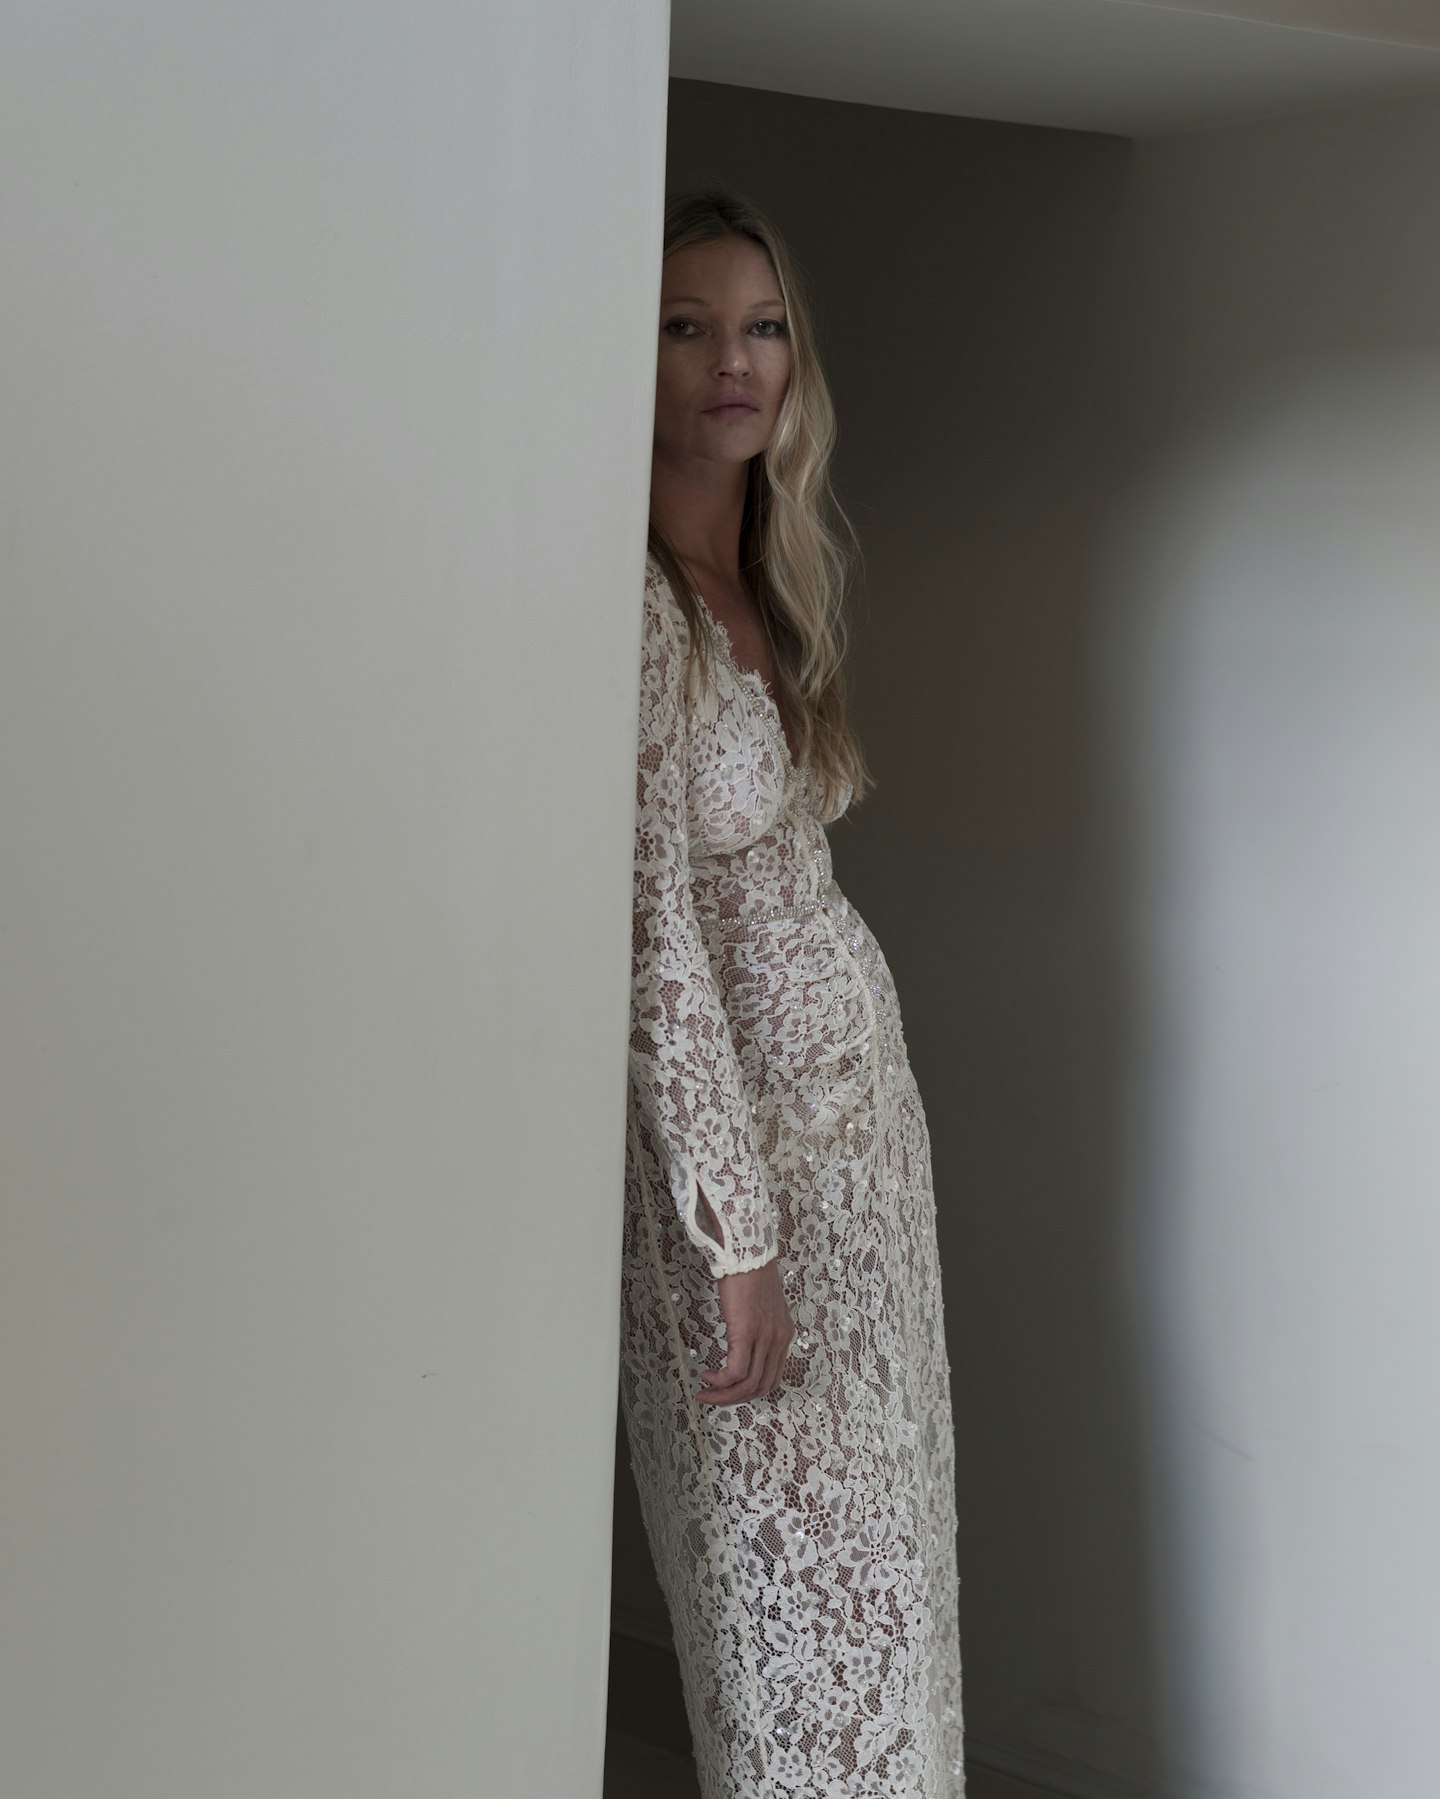 Kate Moss wearing a white lace dress 